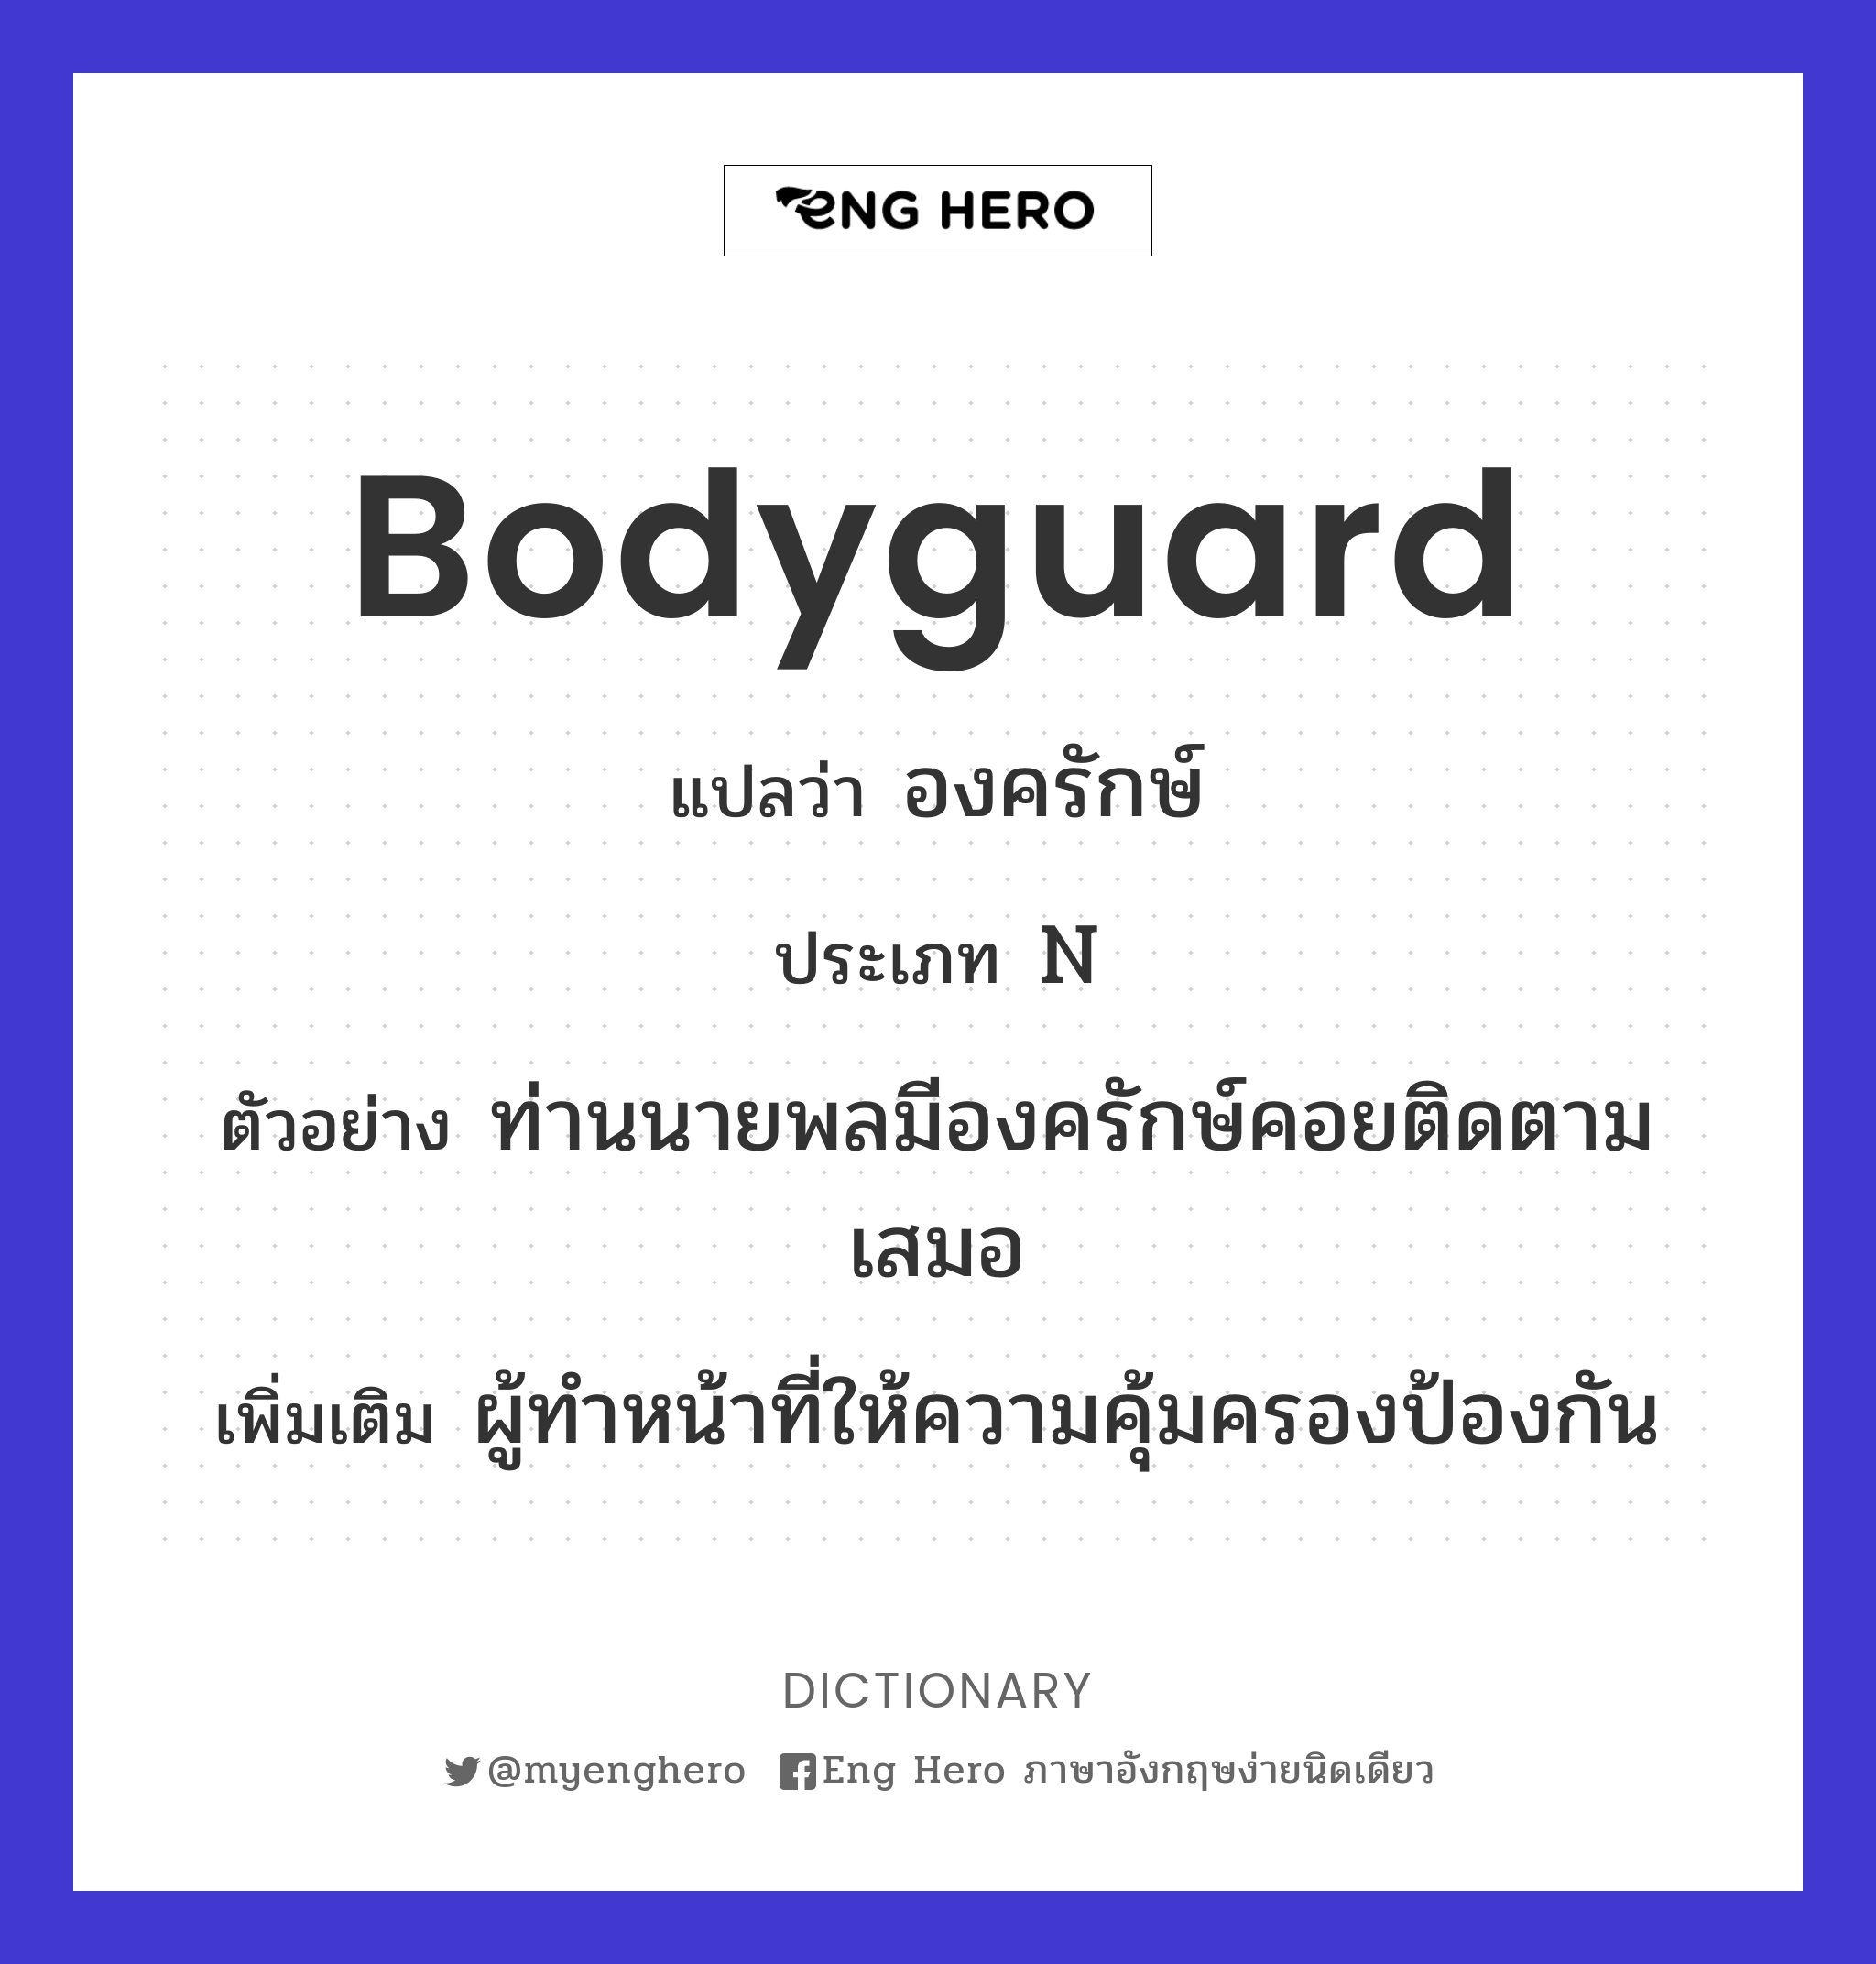 bodyguard